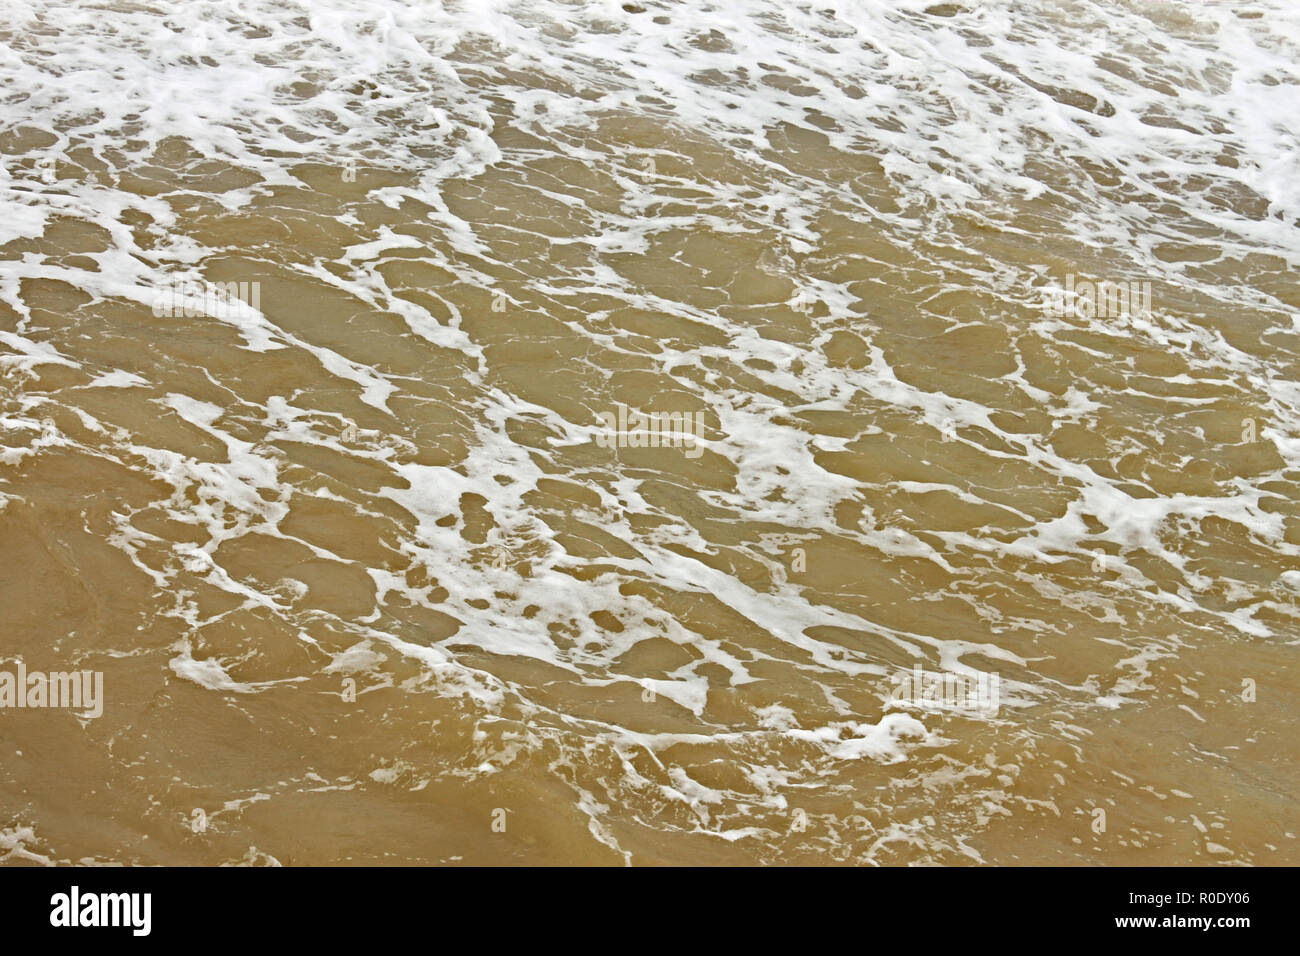 La surface de l'eau mousseuse côtières après la tempête par dragage des fonds marins pollués sand Banque D'Images